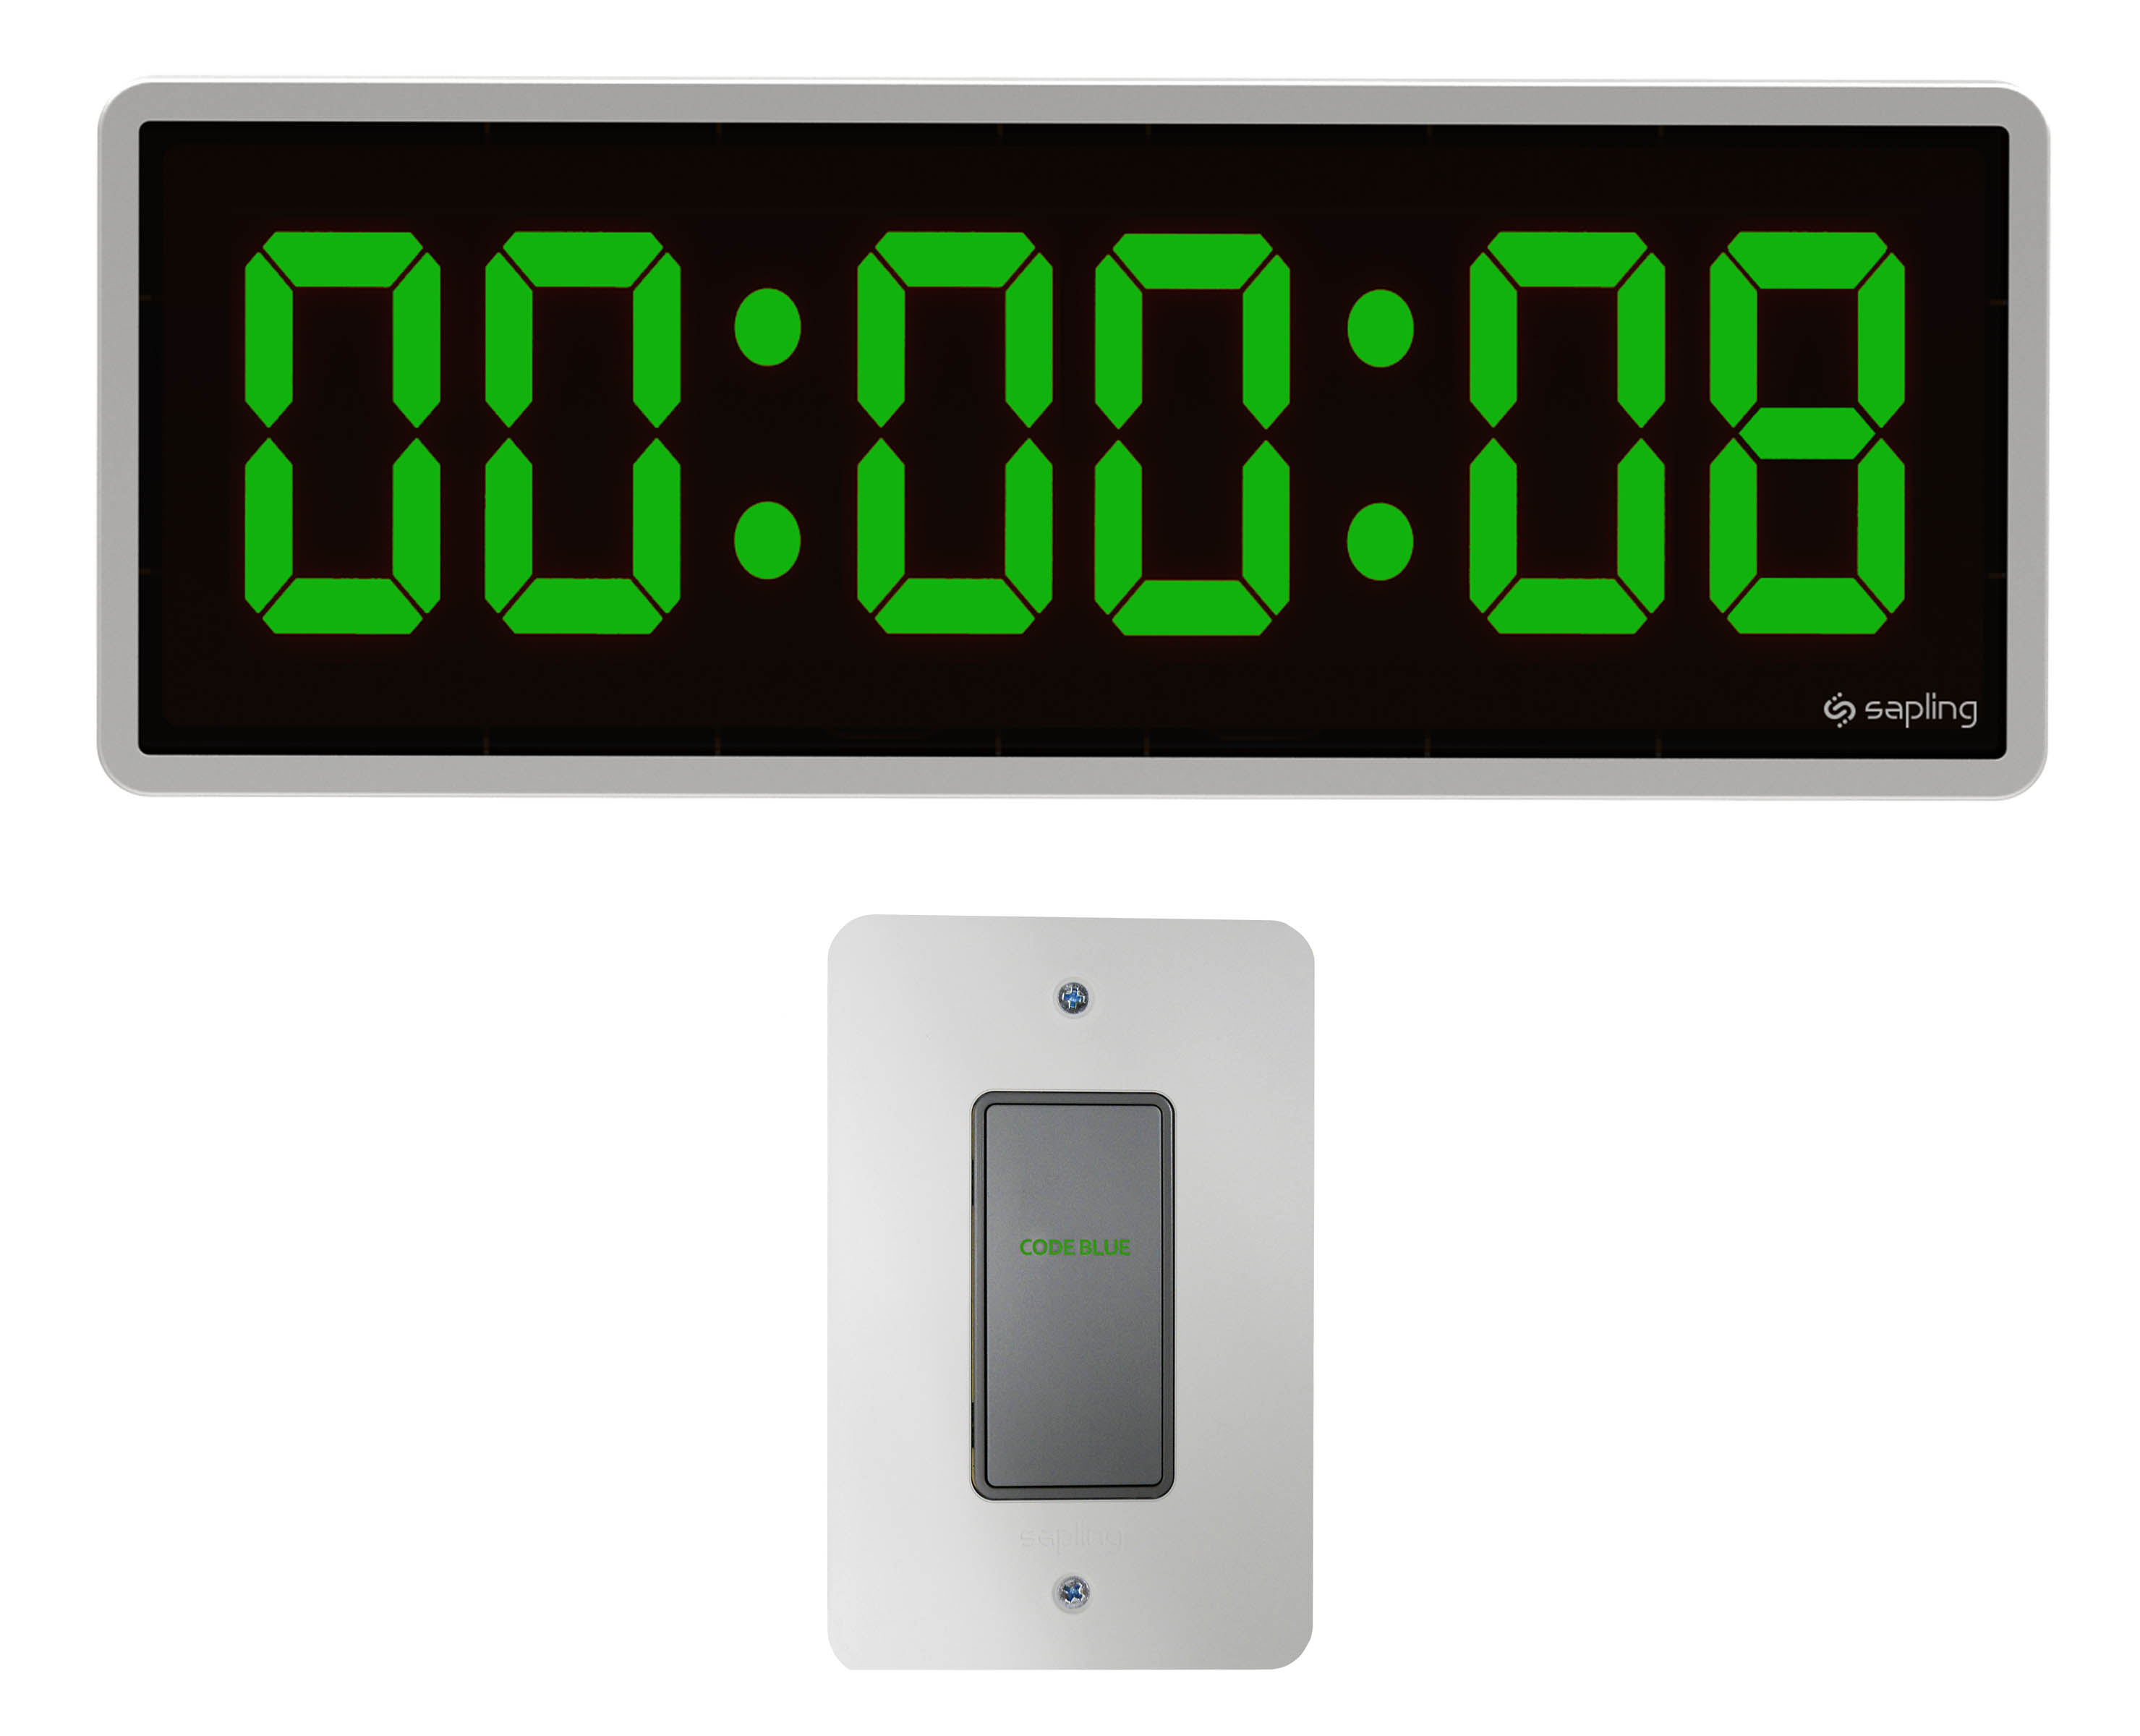 Под таймером. Таймер+секундомер цифровой, 38.2022.01. 70-0530 Rexant цифровые часы с таймером обратного отсчета RX-100а. Секундомер таймер цифровой электронный белый. Таймер с часами.